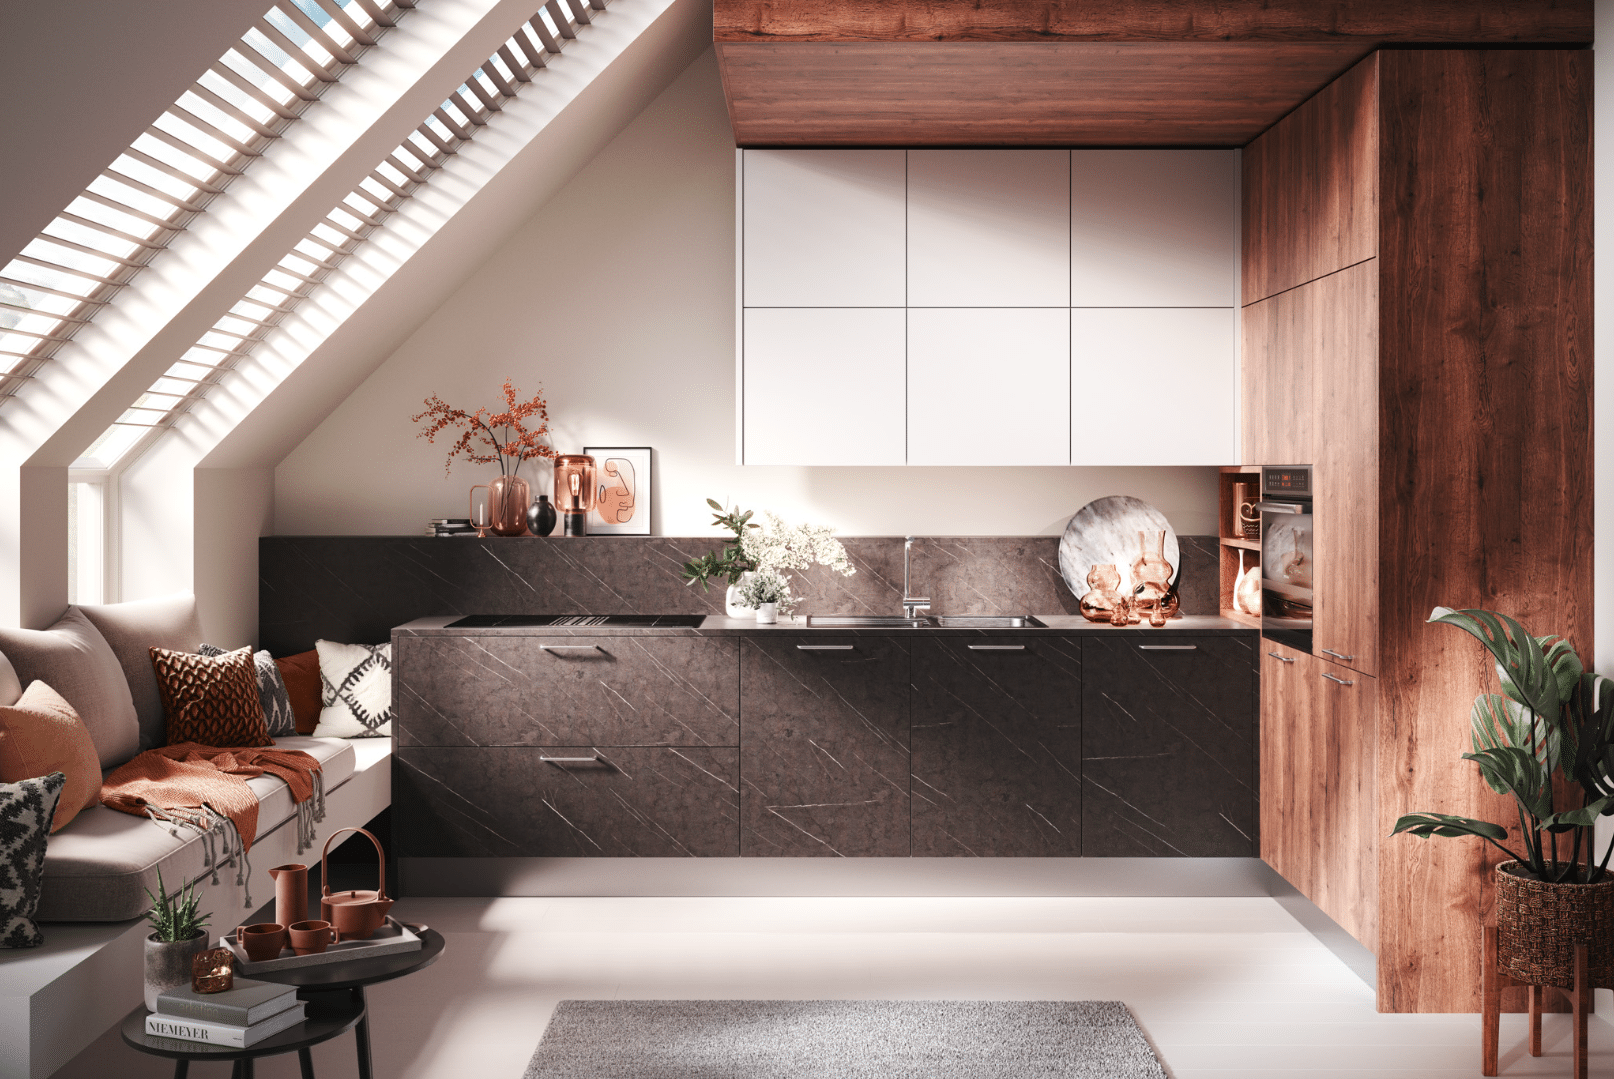 Tischlerei Bauer zeigt eine elegante Küche mit teilweiser Holzoptik von Häcker Küchen, perfekt angepasst an eine baulich vorhandene Dachschräge.